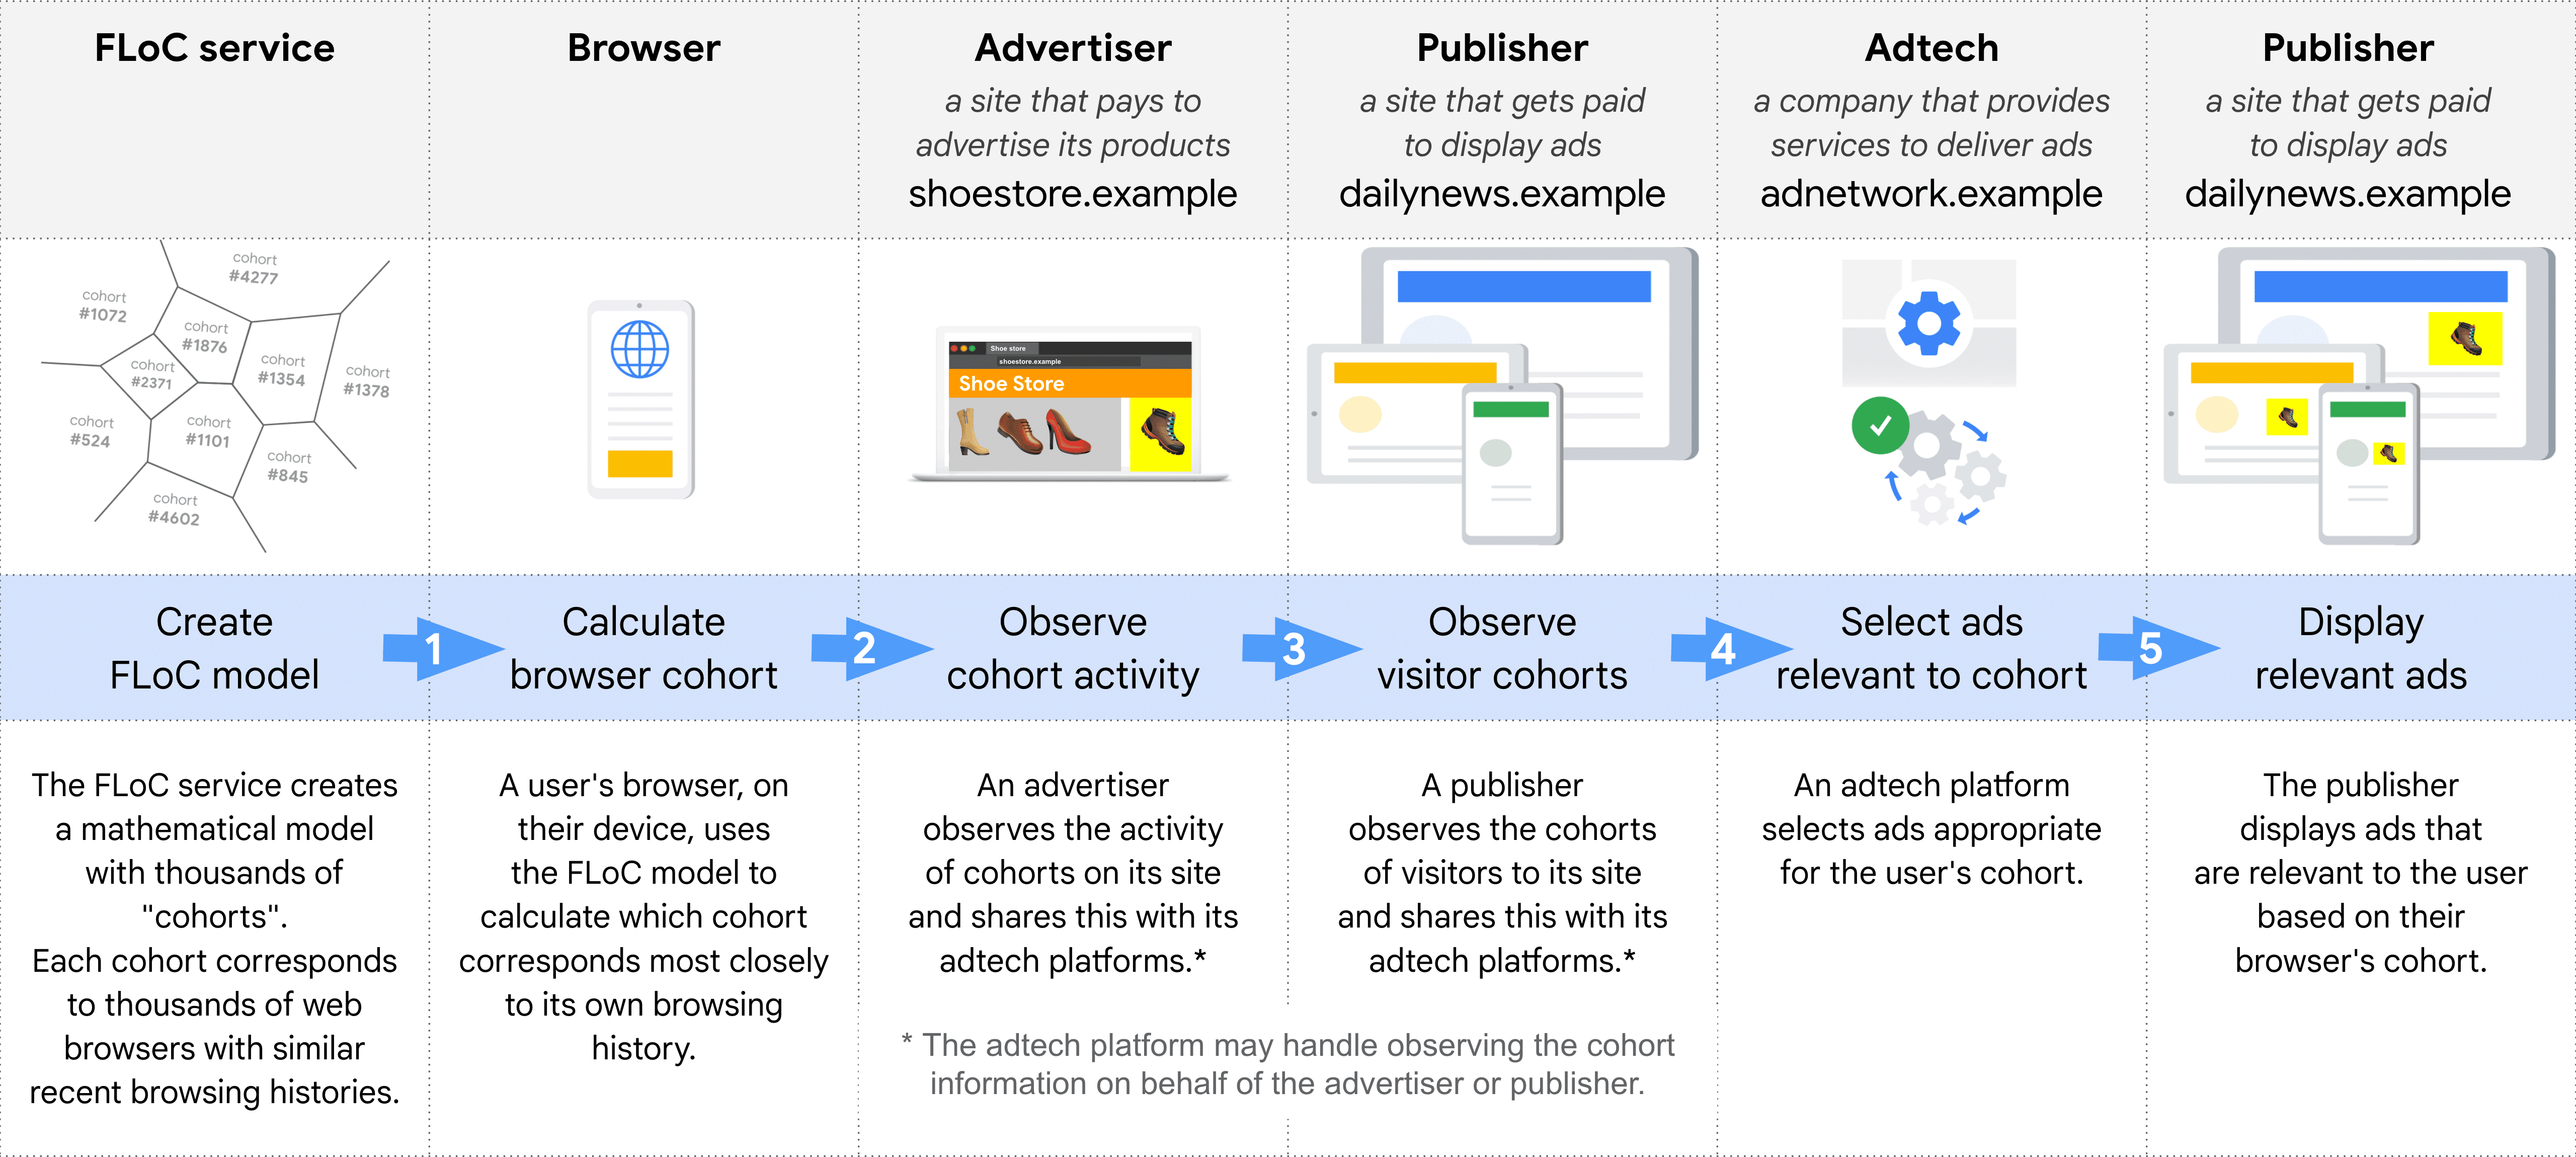 Диаграмма, показывающая, шаг за шагом, различные роли в выборе и показе рекламы с использованием FLoC: служба FLoC, браузер, рекламодатели, издатель (для наблюдения за когортами), рекламные технологии, издатель (для показа рекламы).